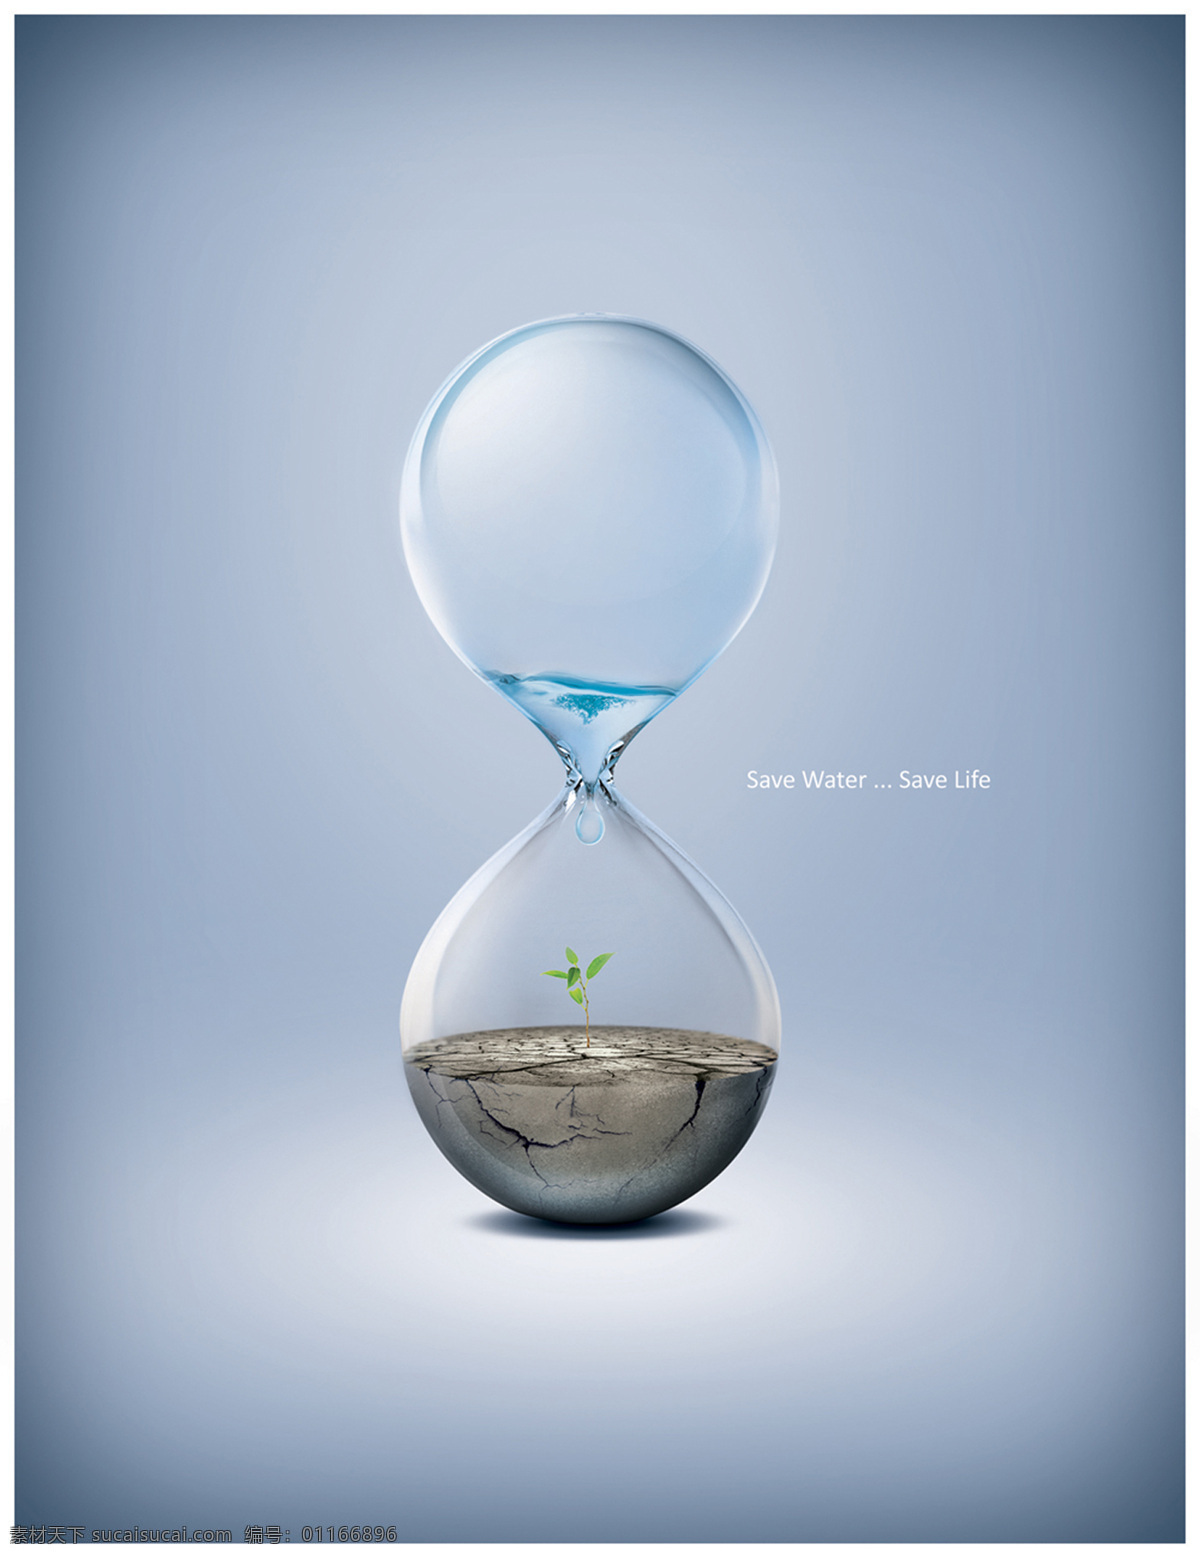 环保 干旱 高清晰 漏斗 沙漏 招贴设计 水 植物 人类生存 海报 环保公益海报